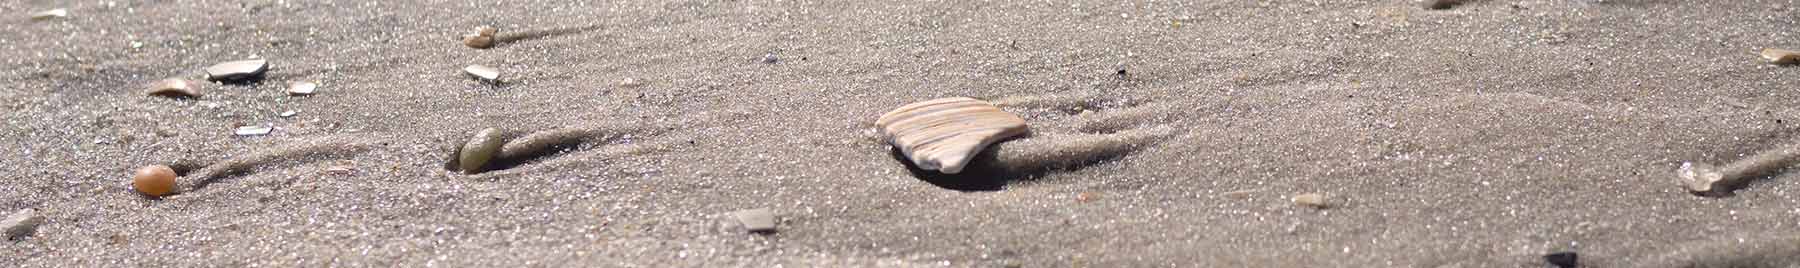 shell pieces on a sandy beach